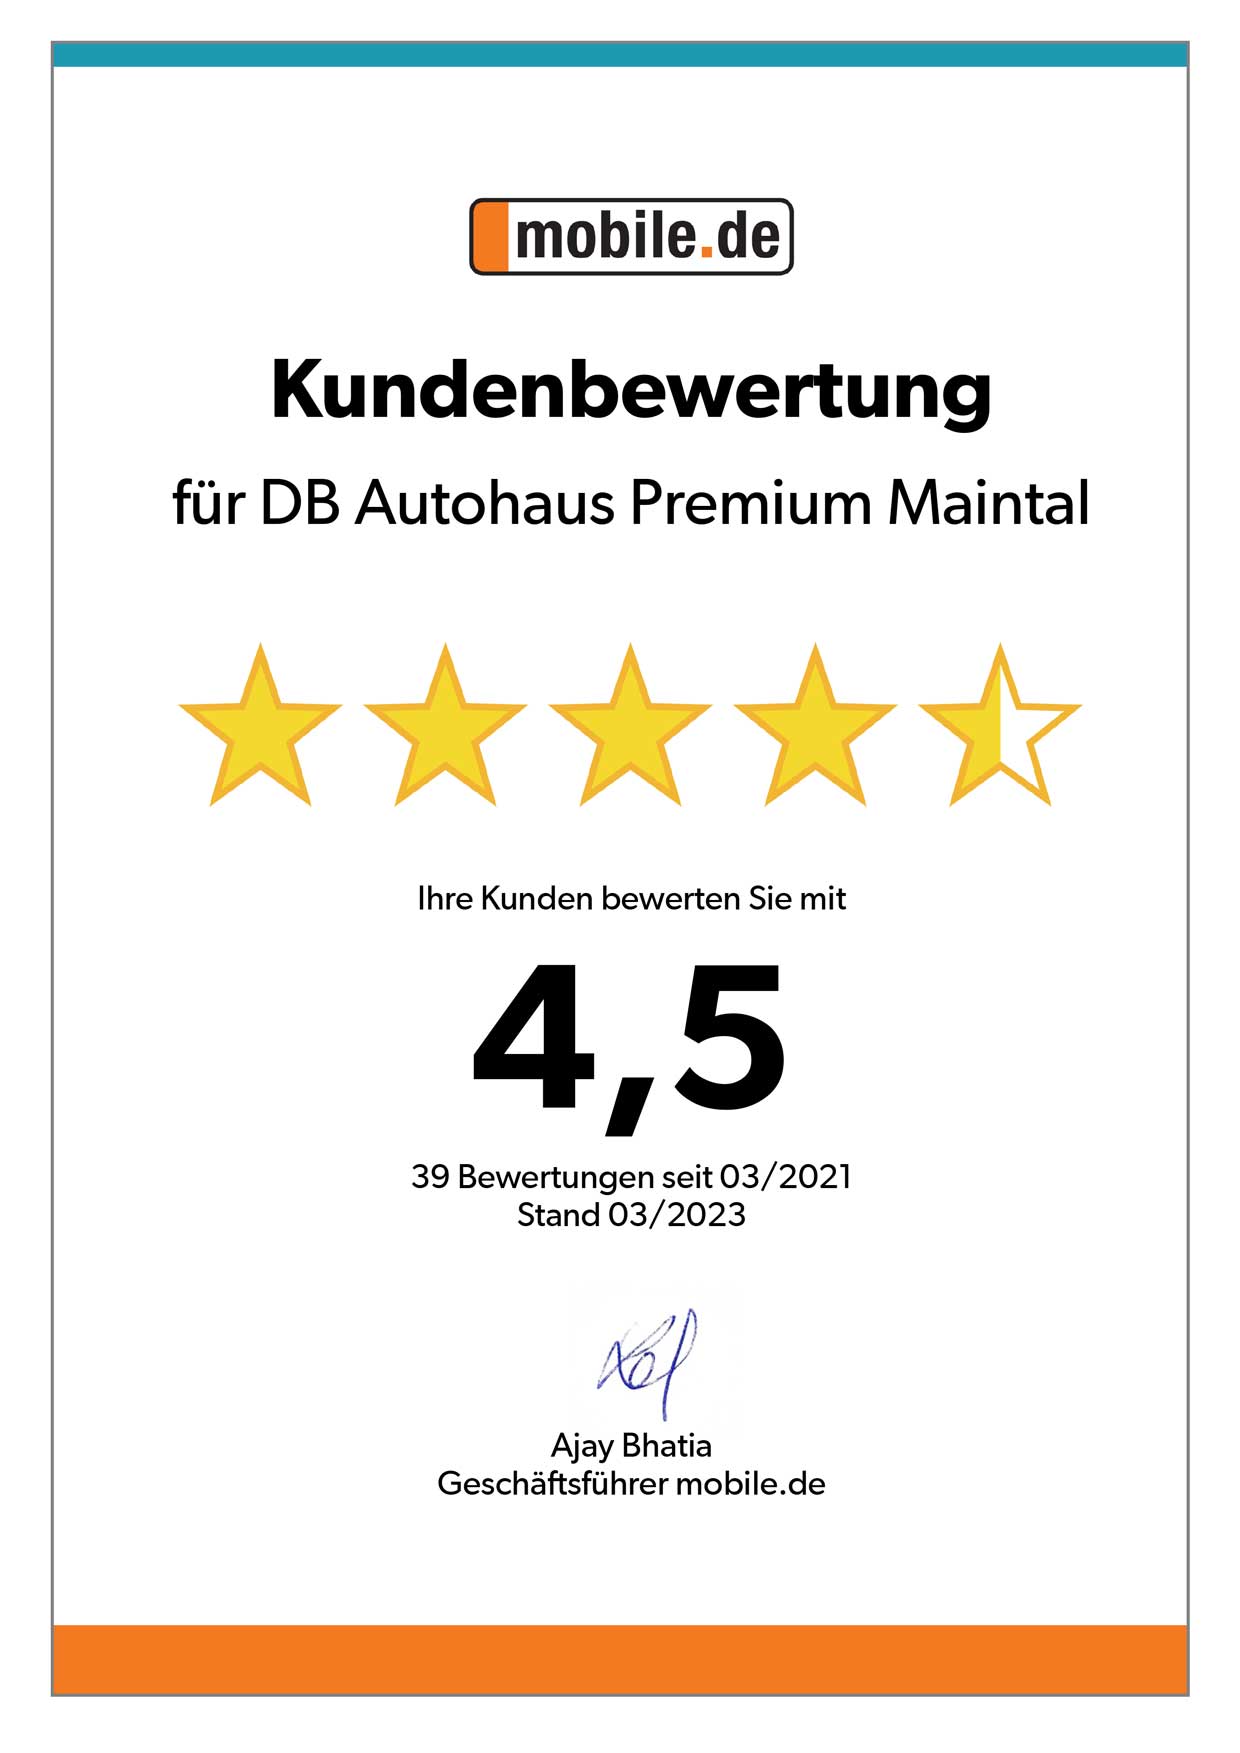 Auszeichnung von mobile.de für DB Autohaus Premium Maintal